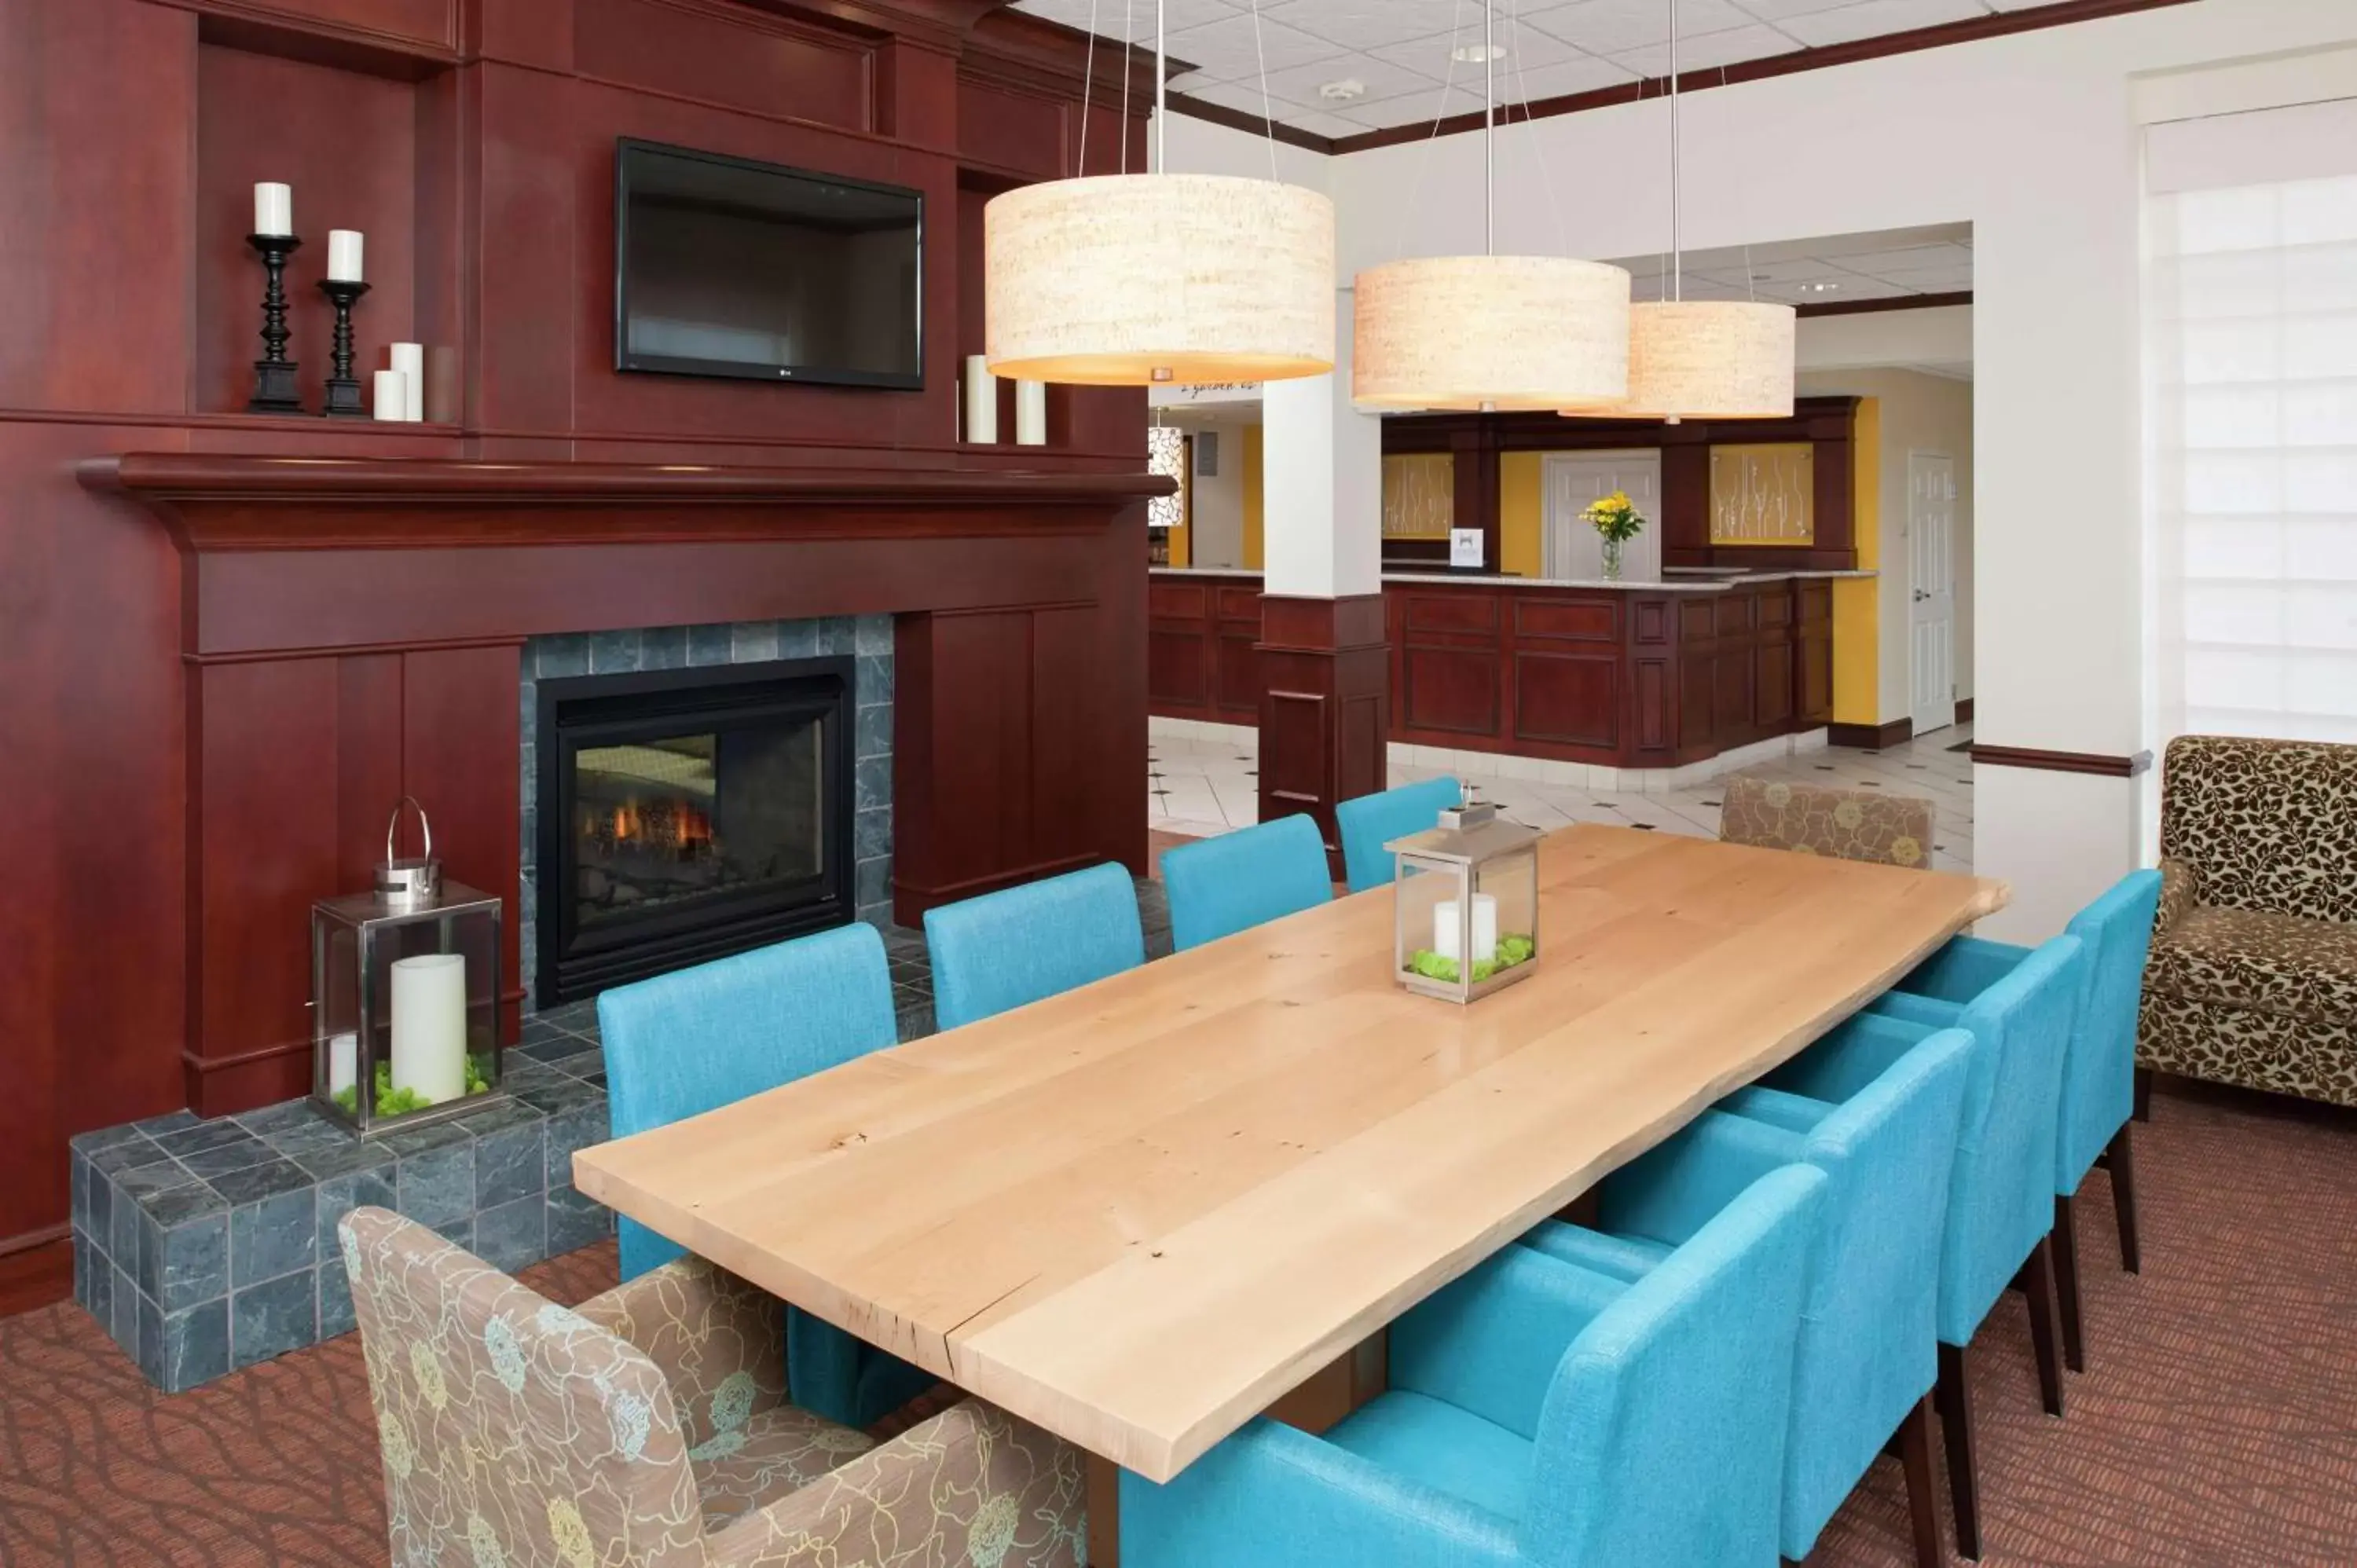 Lobby or reception, Dining Area in Hilton Garden Inn St. Paul Oakdale